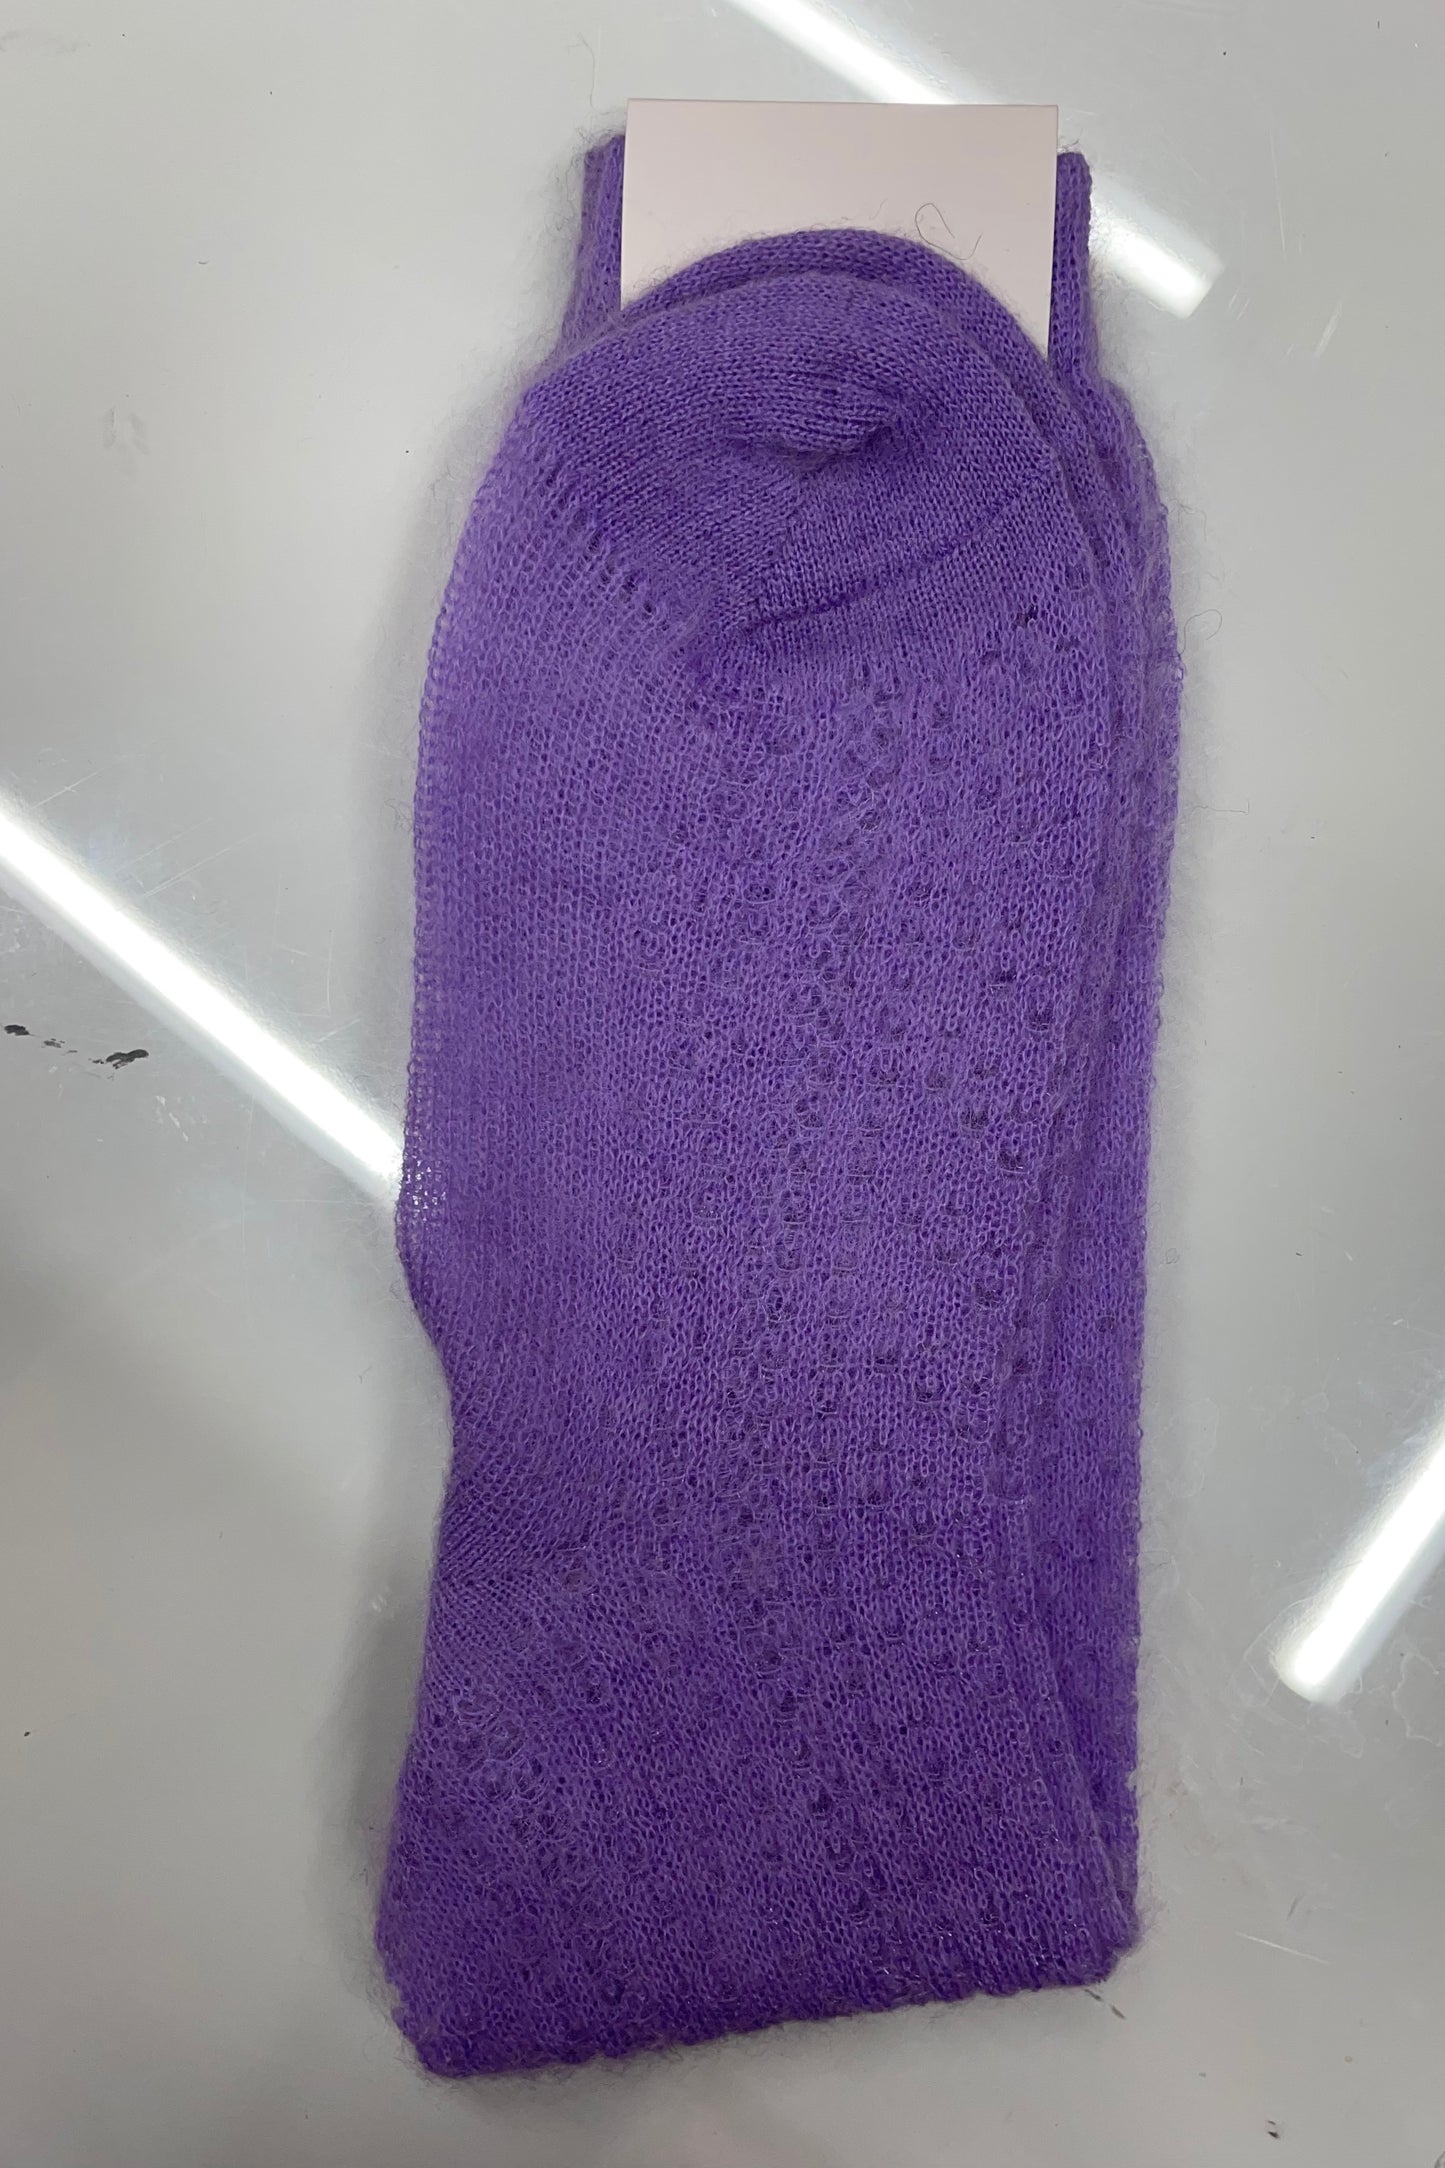 Vivetta- Knit Socks: Lilac